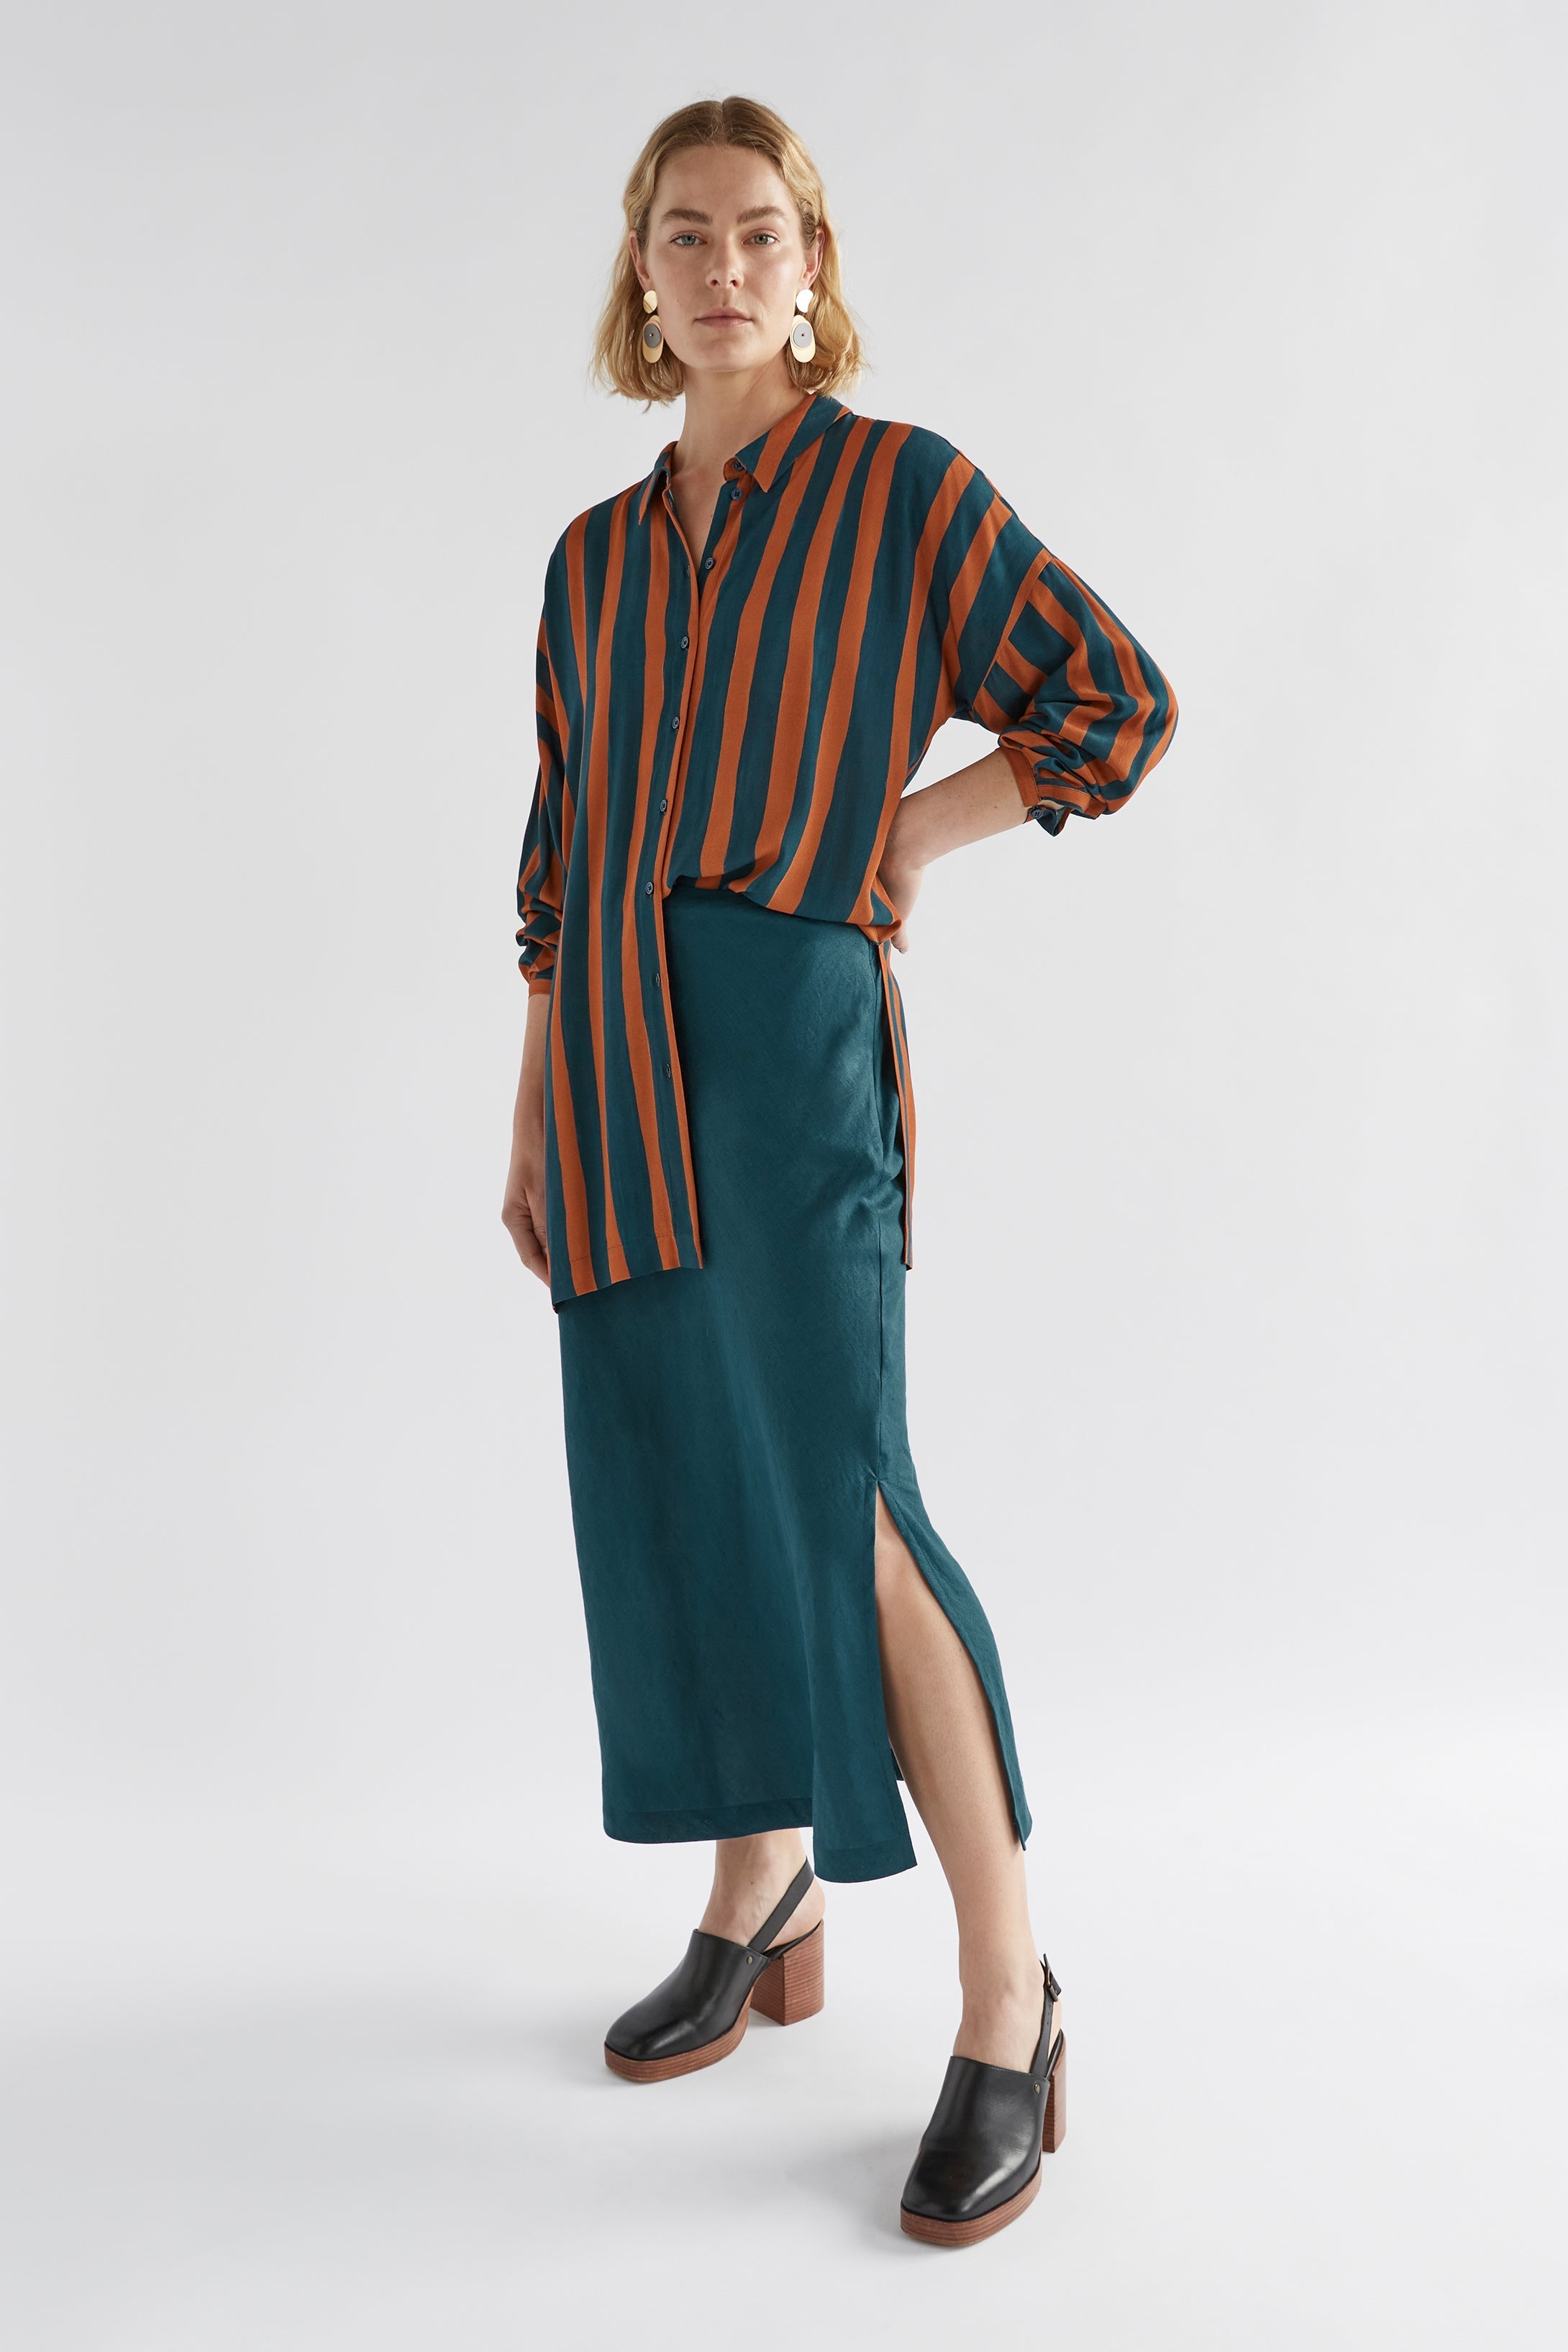 Stilla Linen Skirt| Peacock